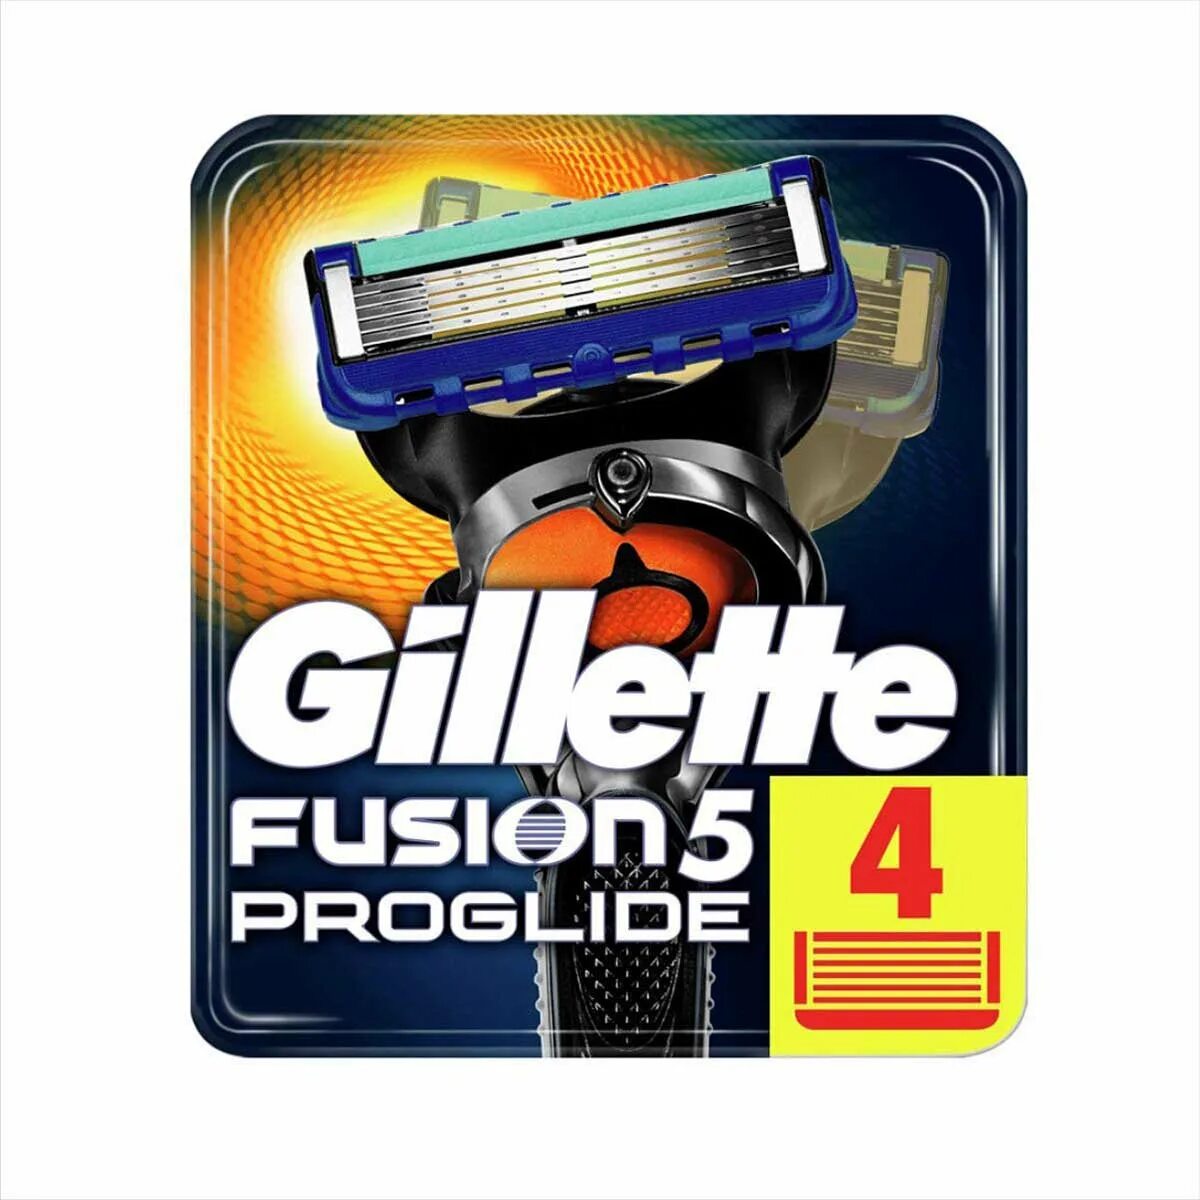 Кассеты для бритья фьюжен 5. Джилет Фьюжен 5 Проглайд лезвия. Fusion PROGLIDE 5 кассеты.